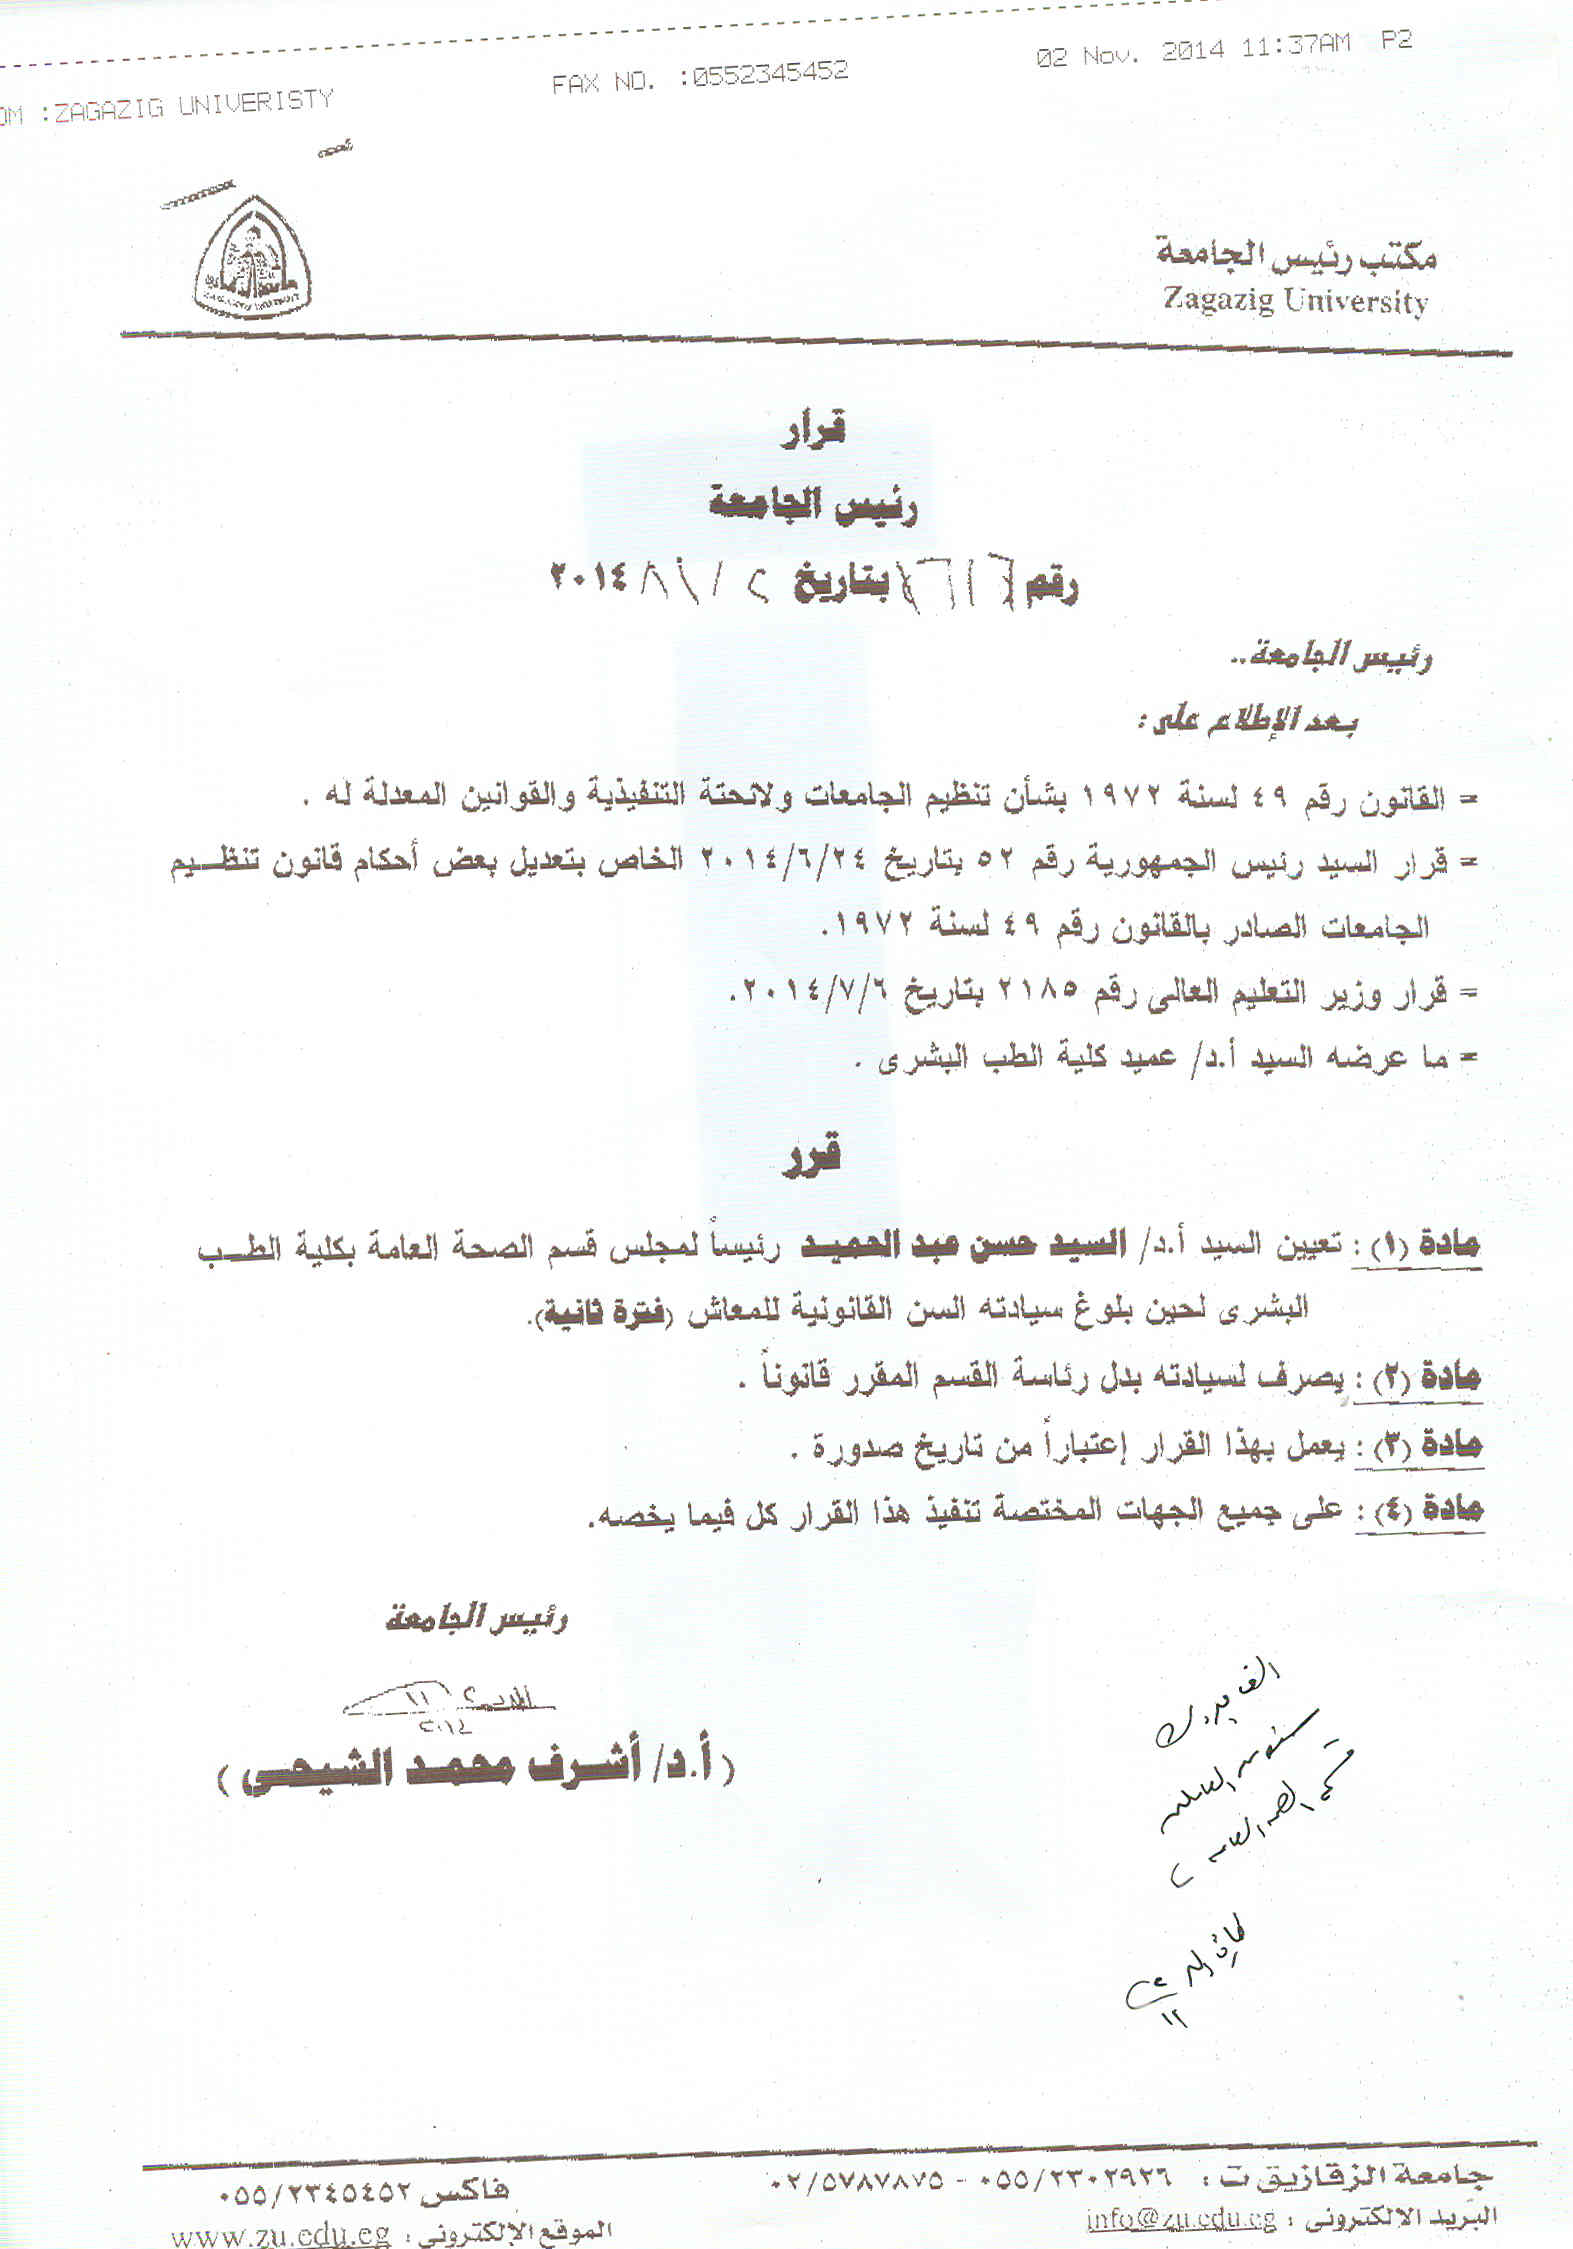 تشكيل لجنة الحكم على رسالة الطبيبه أماني يوسف محمد فودة